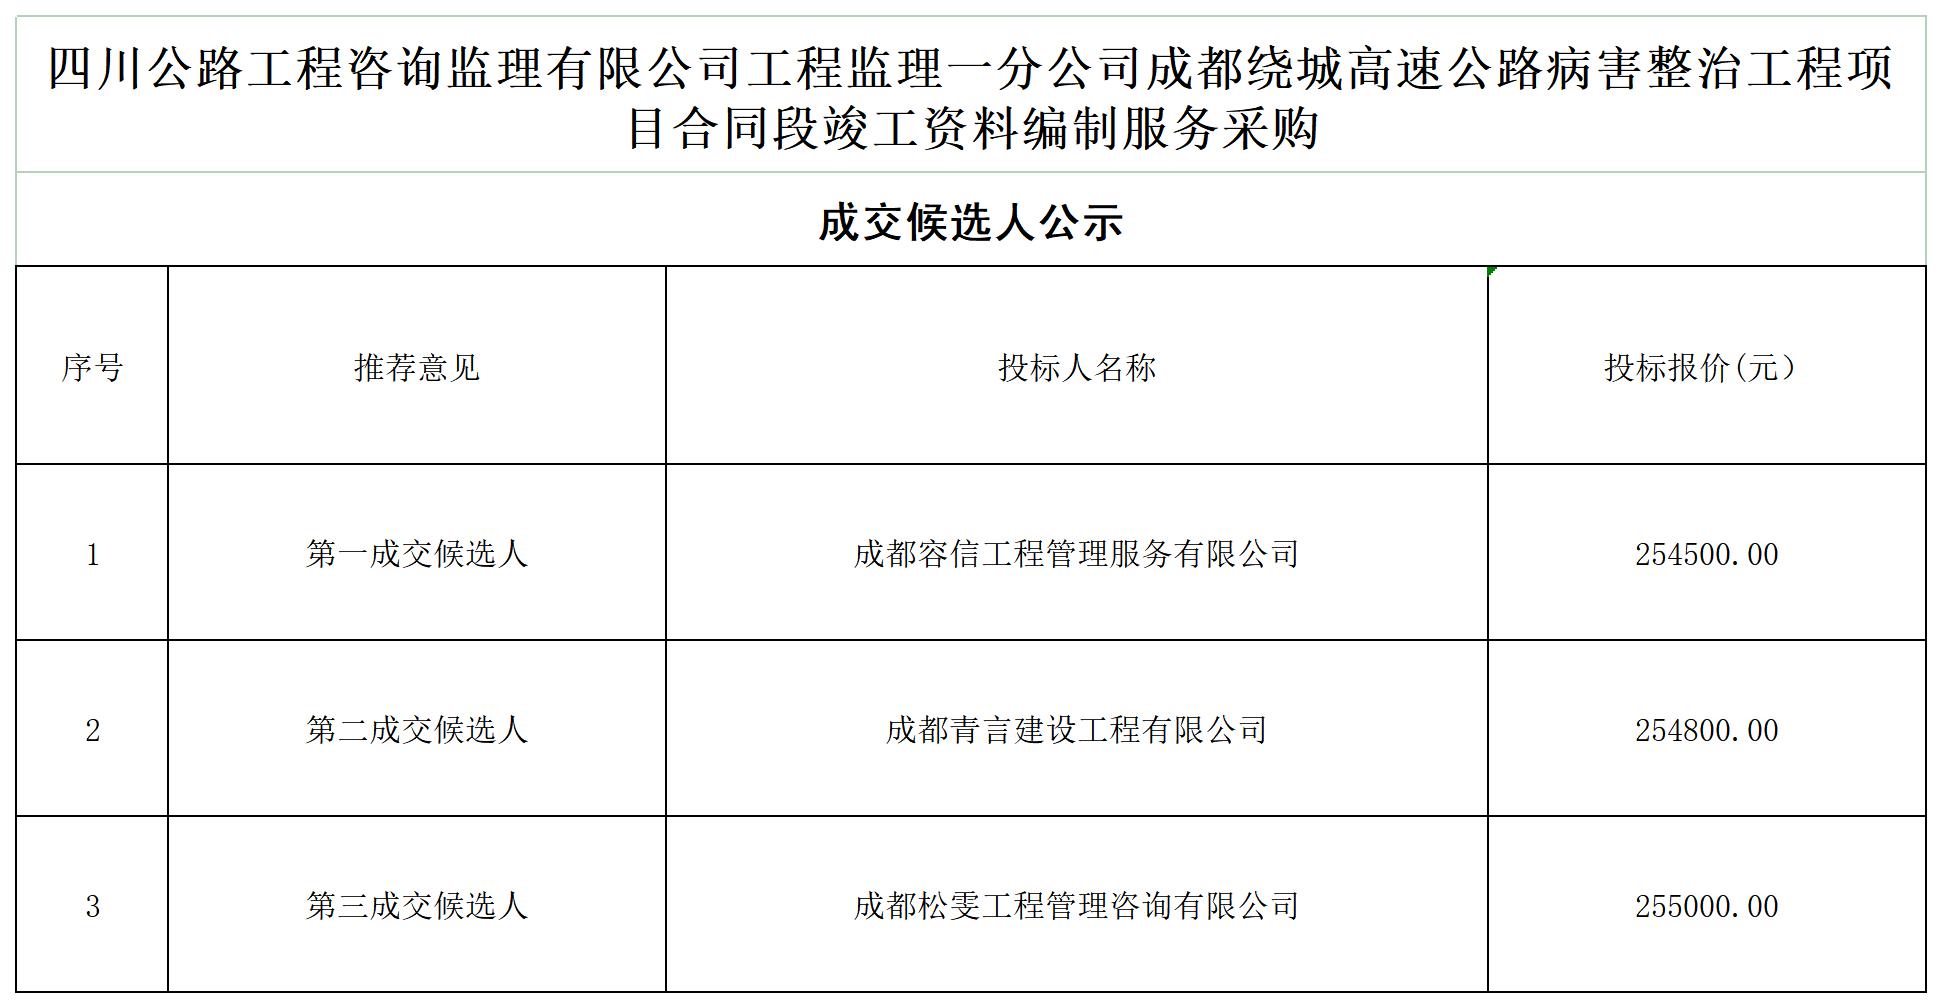 ld乐动·体育（中国）官方网站工程监理一分公司成都绕城高速公路病害整治工程项目合同段竣工资料编制服务采购_A1F6.jpg